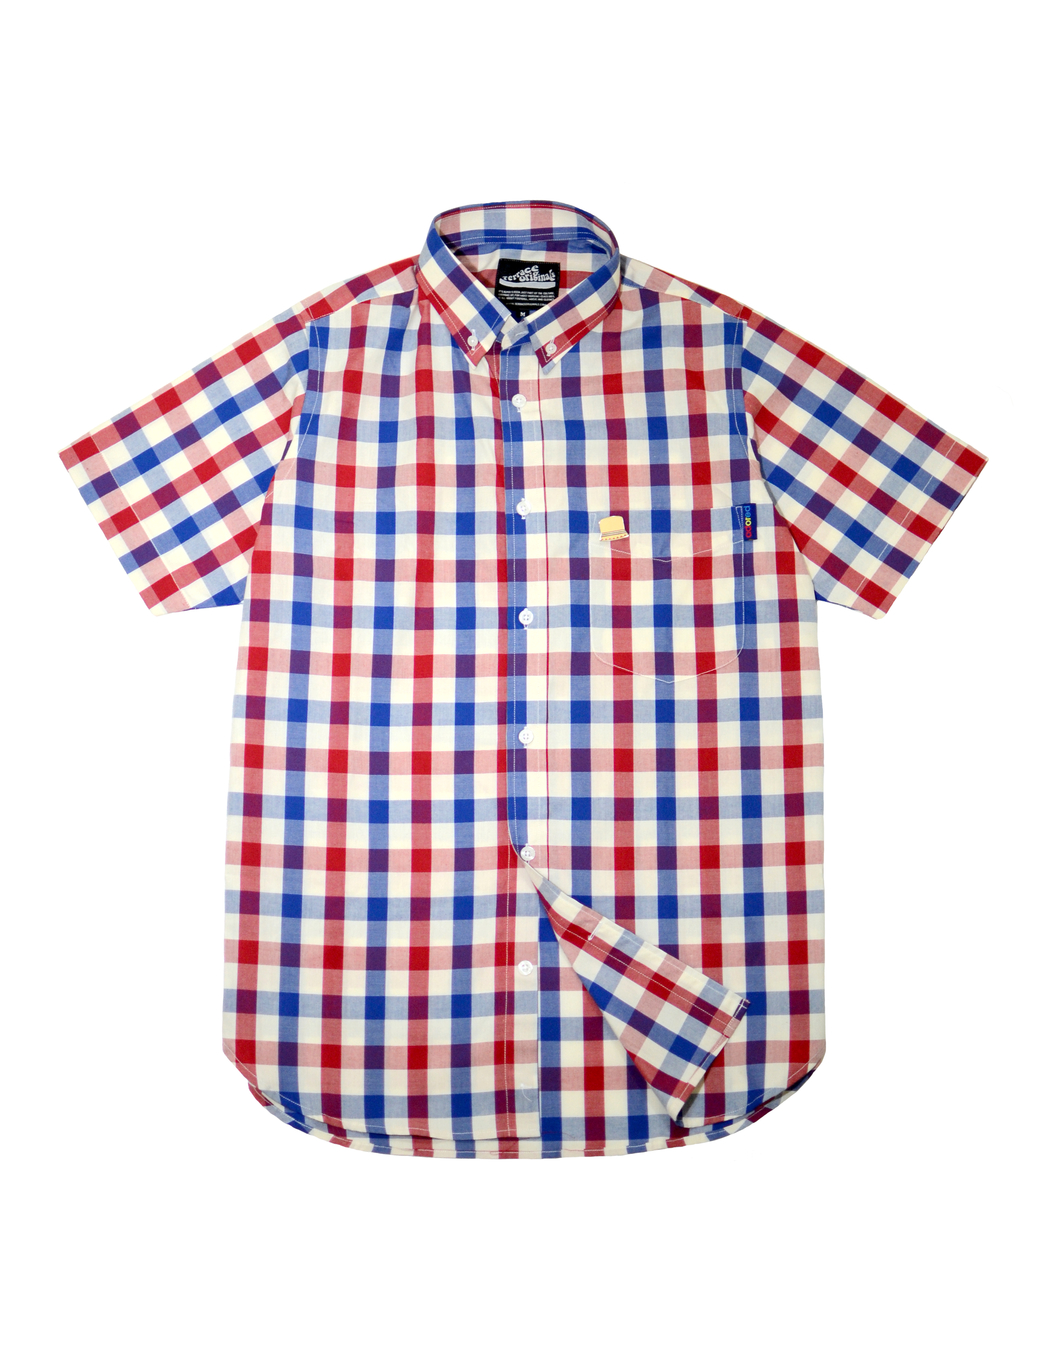 S/S Adored Check Shirt - Red/White/Blue | Terrace Originals